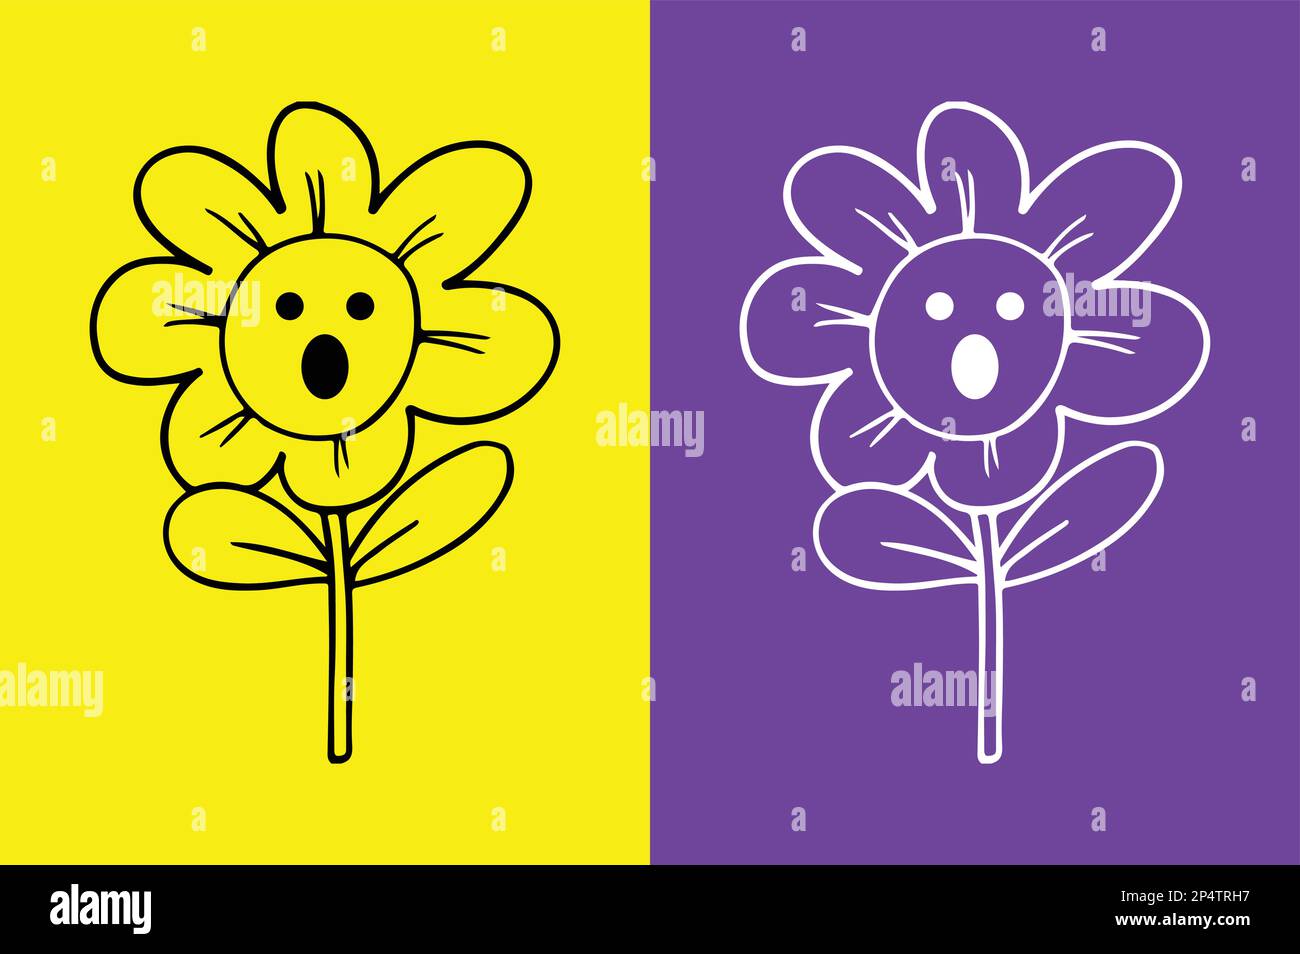 Flower surprised face emoji - astonished emoji Stock Vector